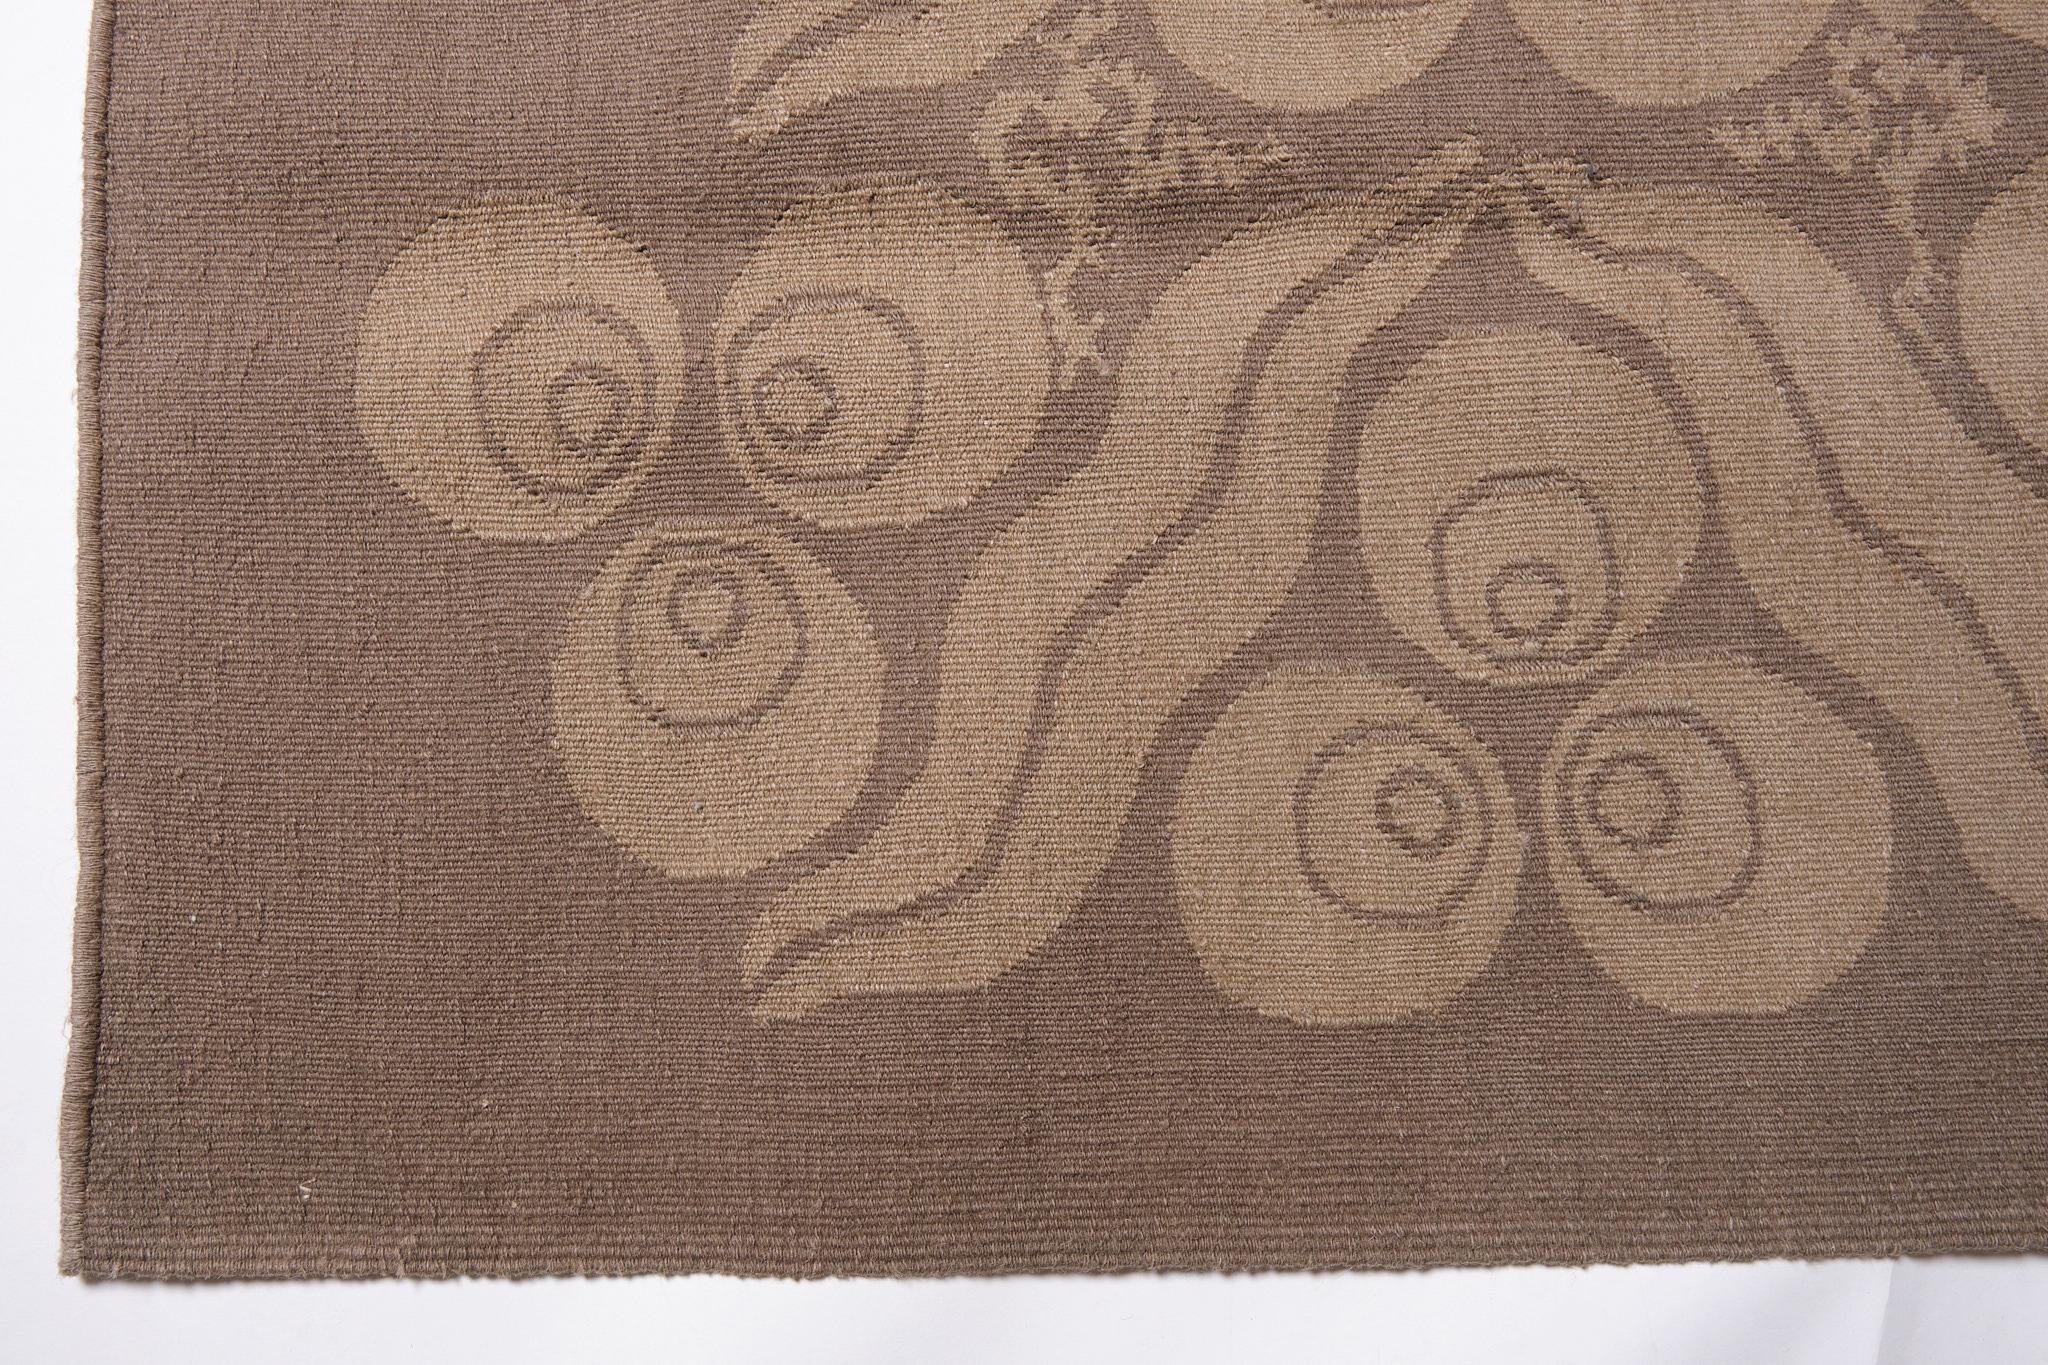 Dies ist ein moderner flachgewebter Kilim-Teppich aus der Türkei mit einer seltenen und schönen Farbkomposition.

Es handelt sich um einen modernen neuen Kelim, der modernes Design mit traditionellen Kelimherstellungsmethoden wie Wollqualität,